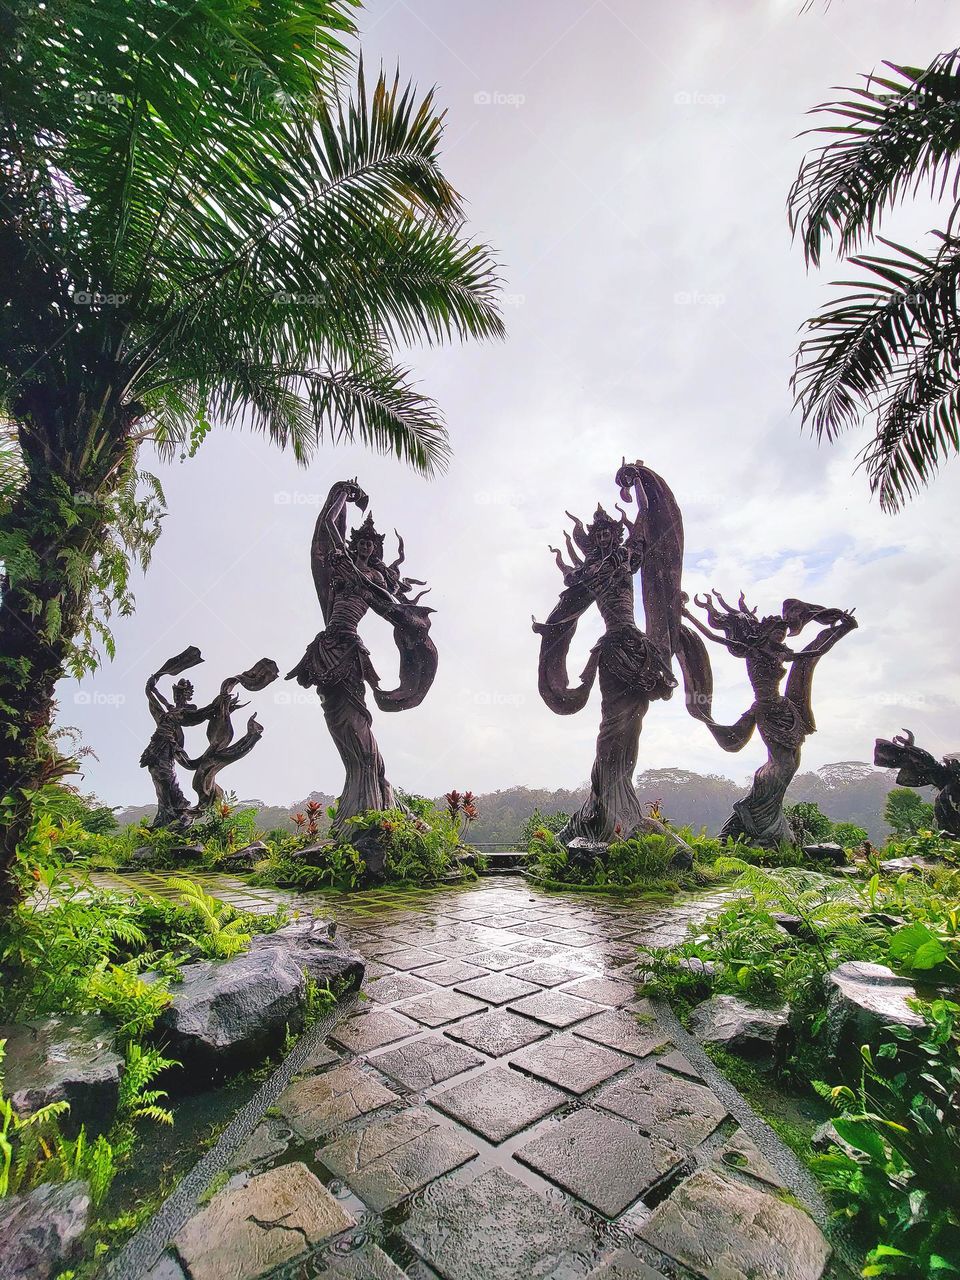 angel Statues in Bali 3